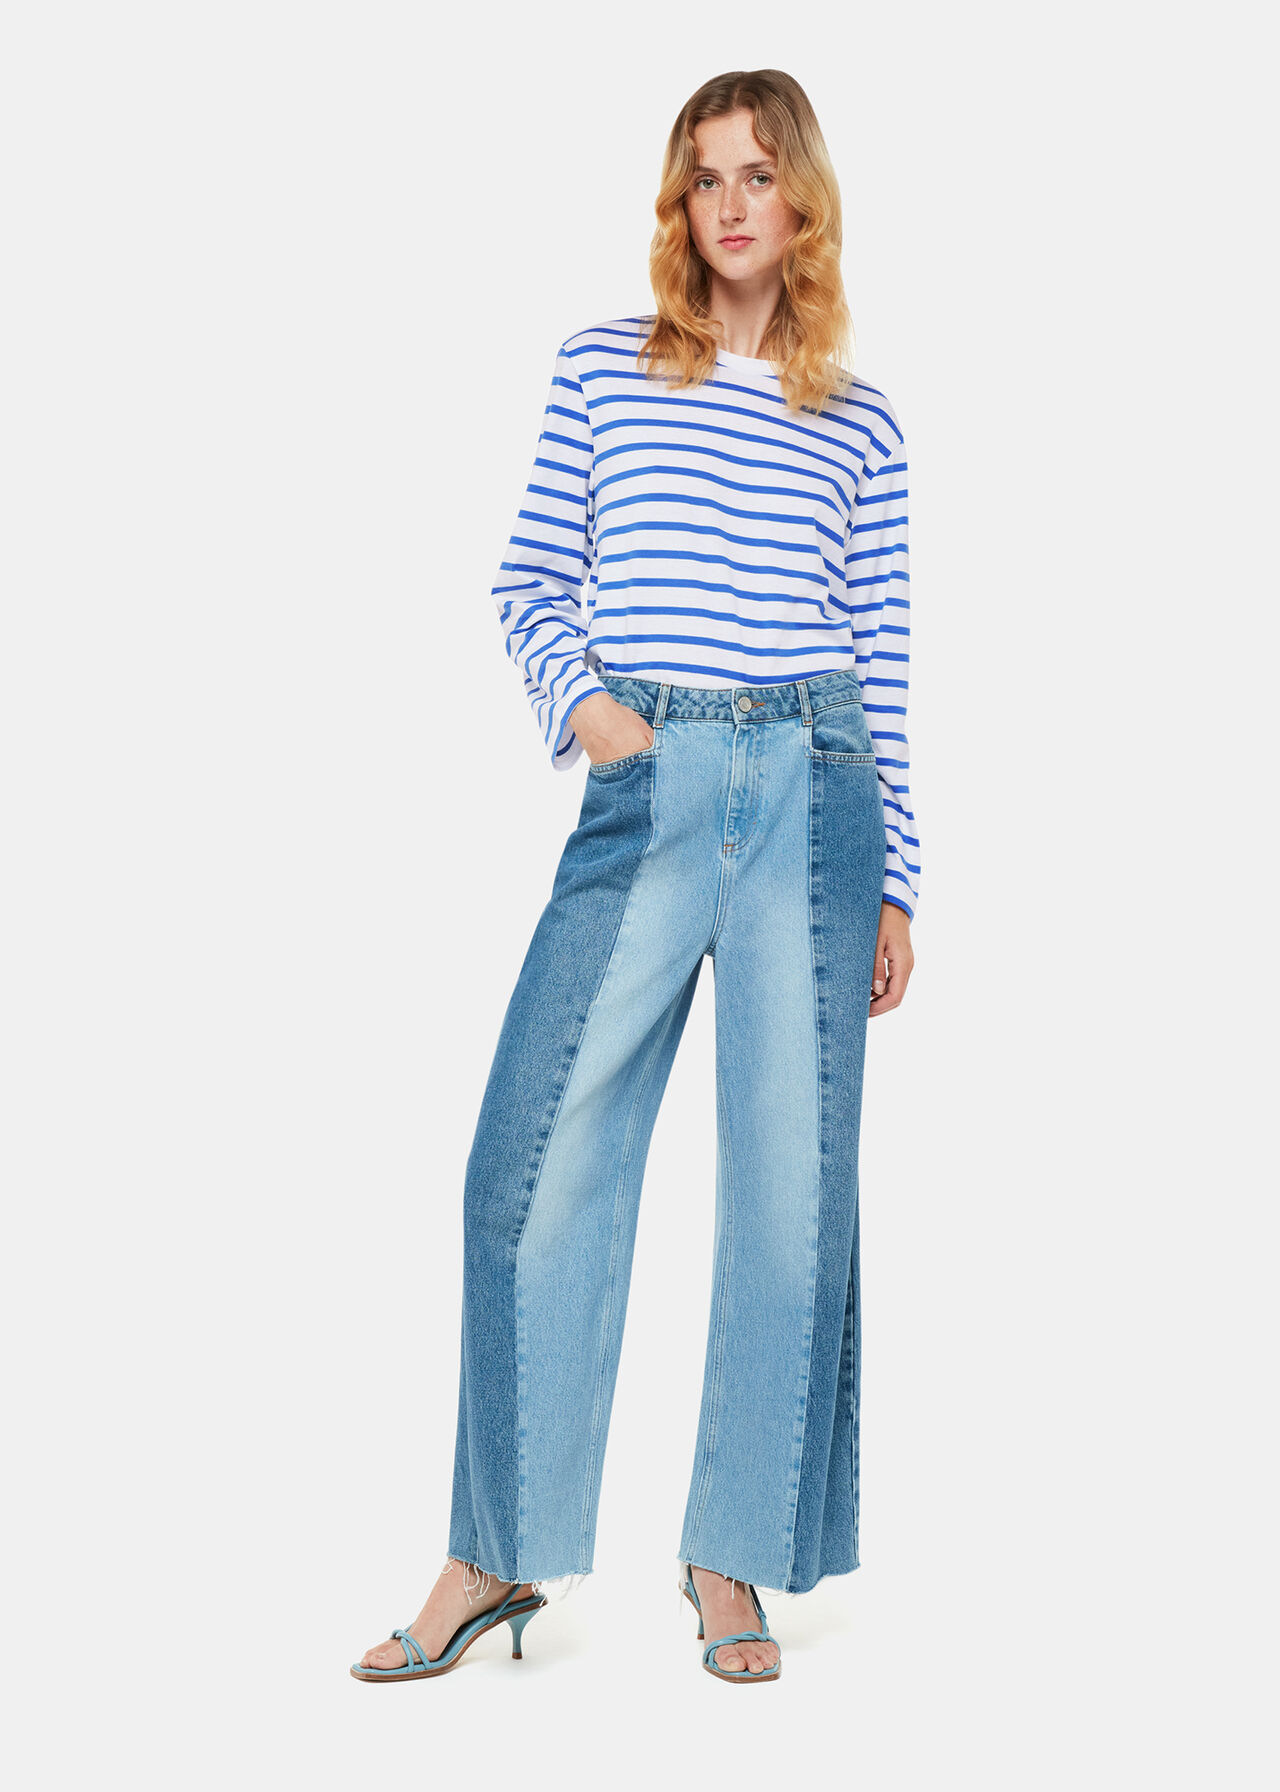 Blue/Multi Stripe Cotton Top | WHISTLES